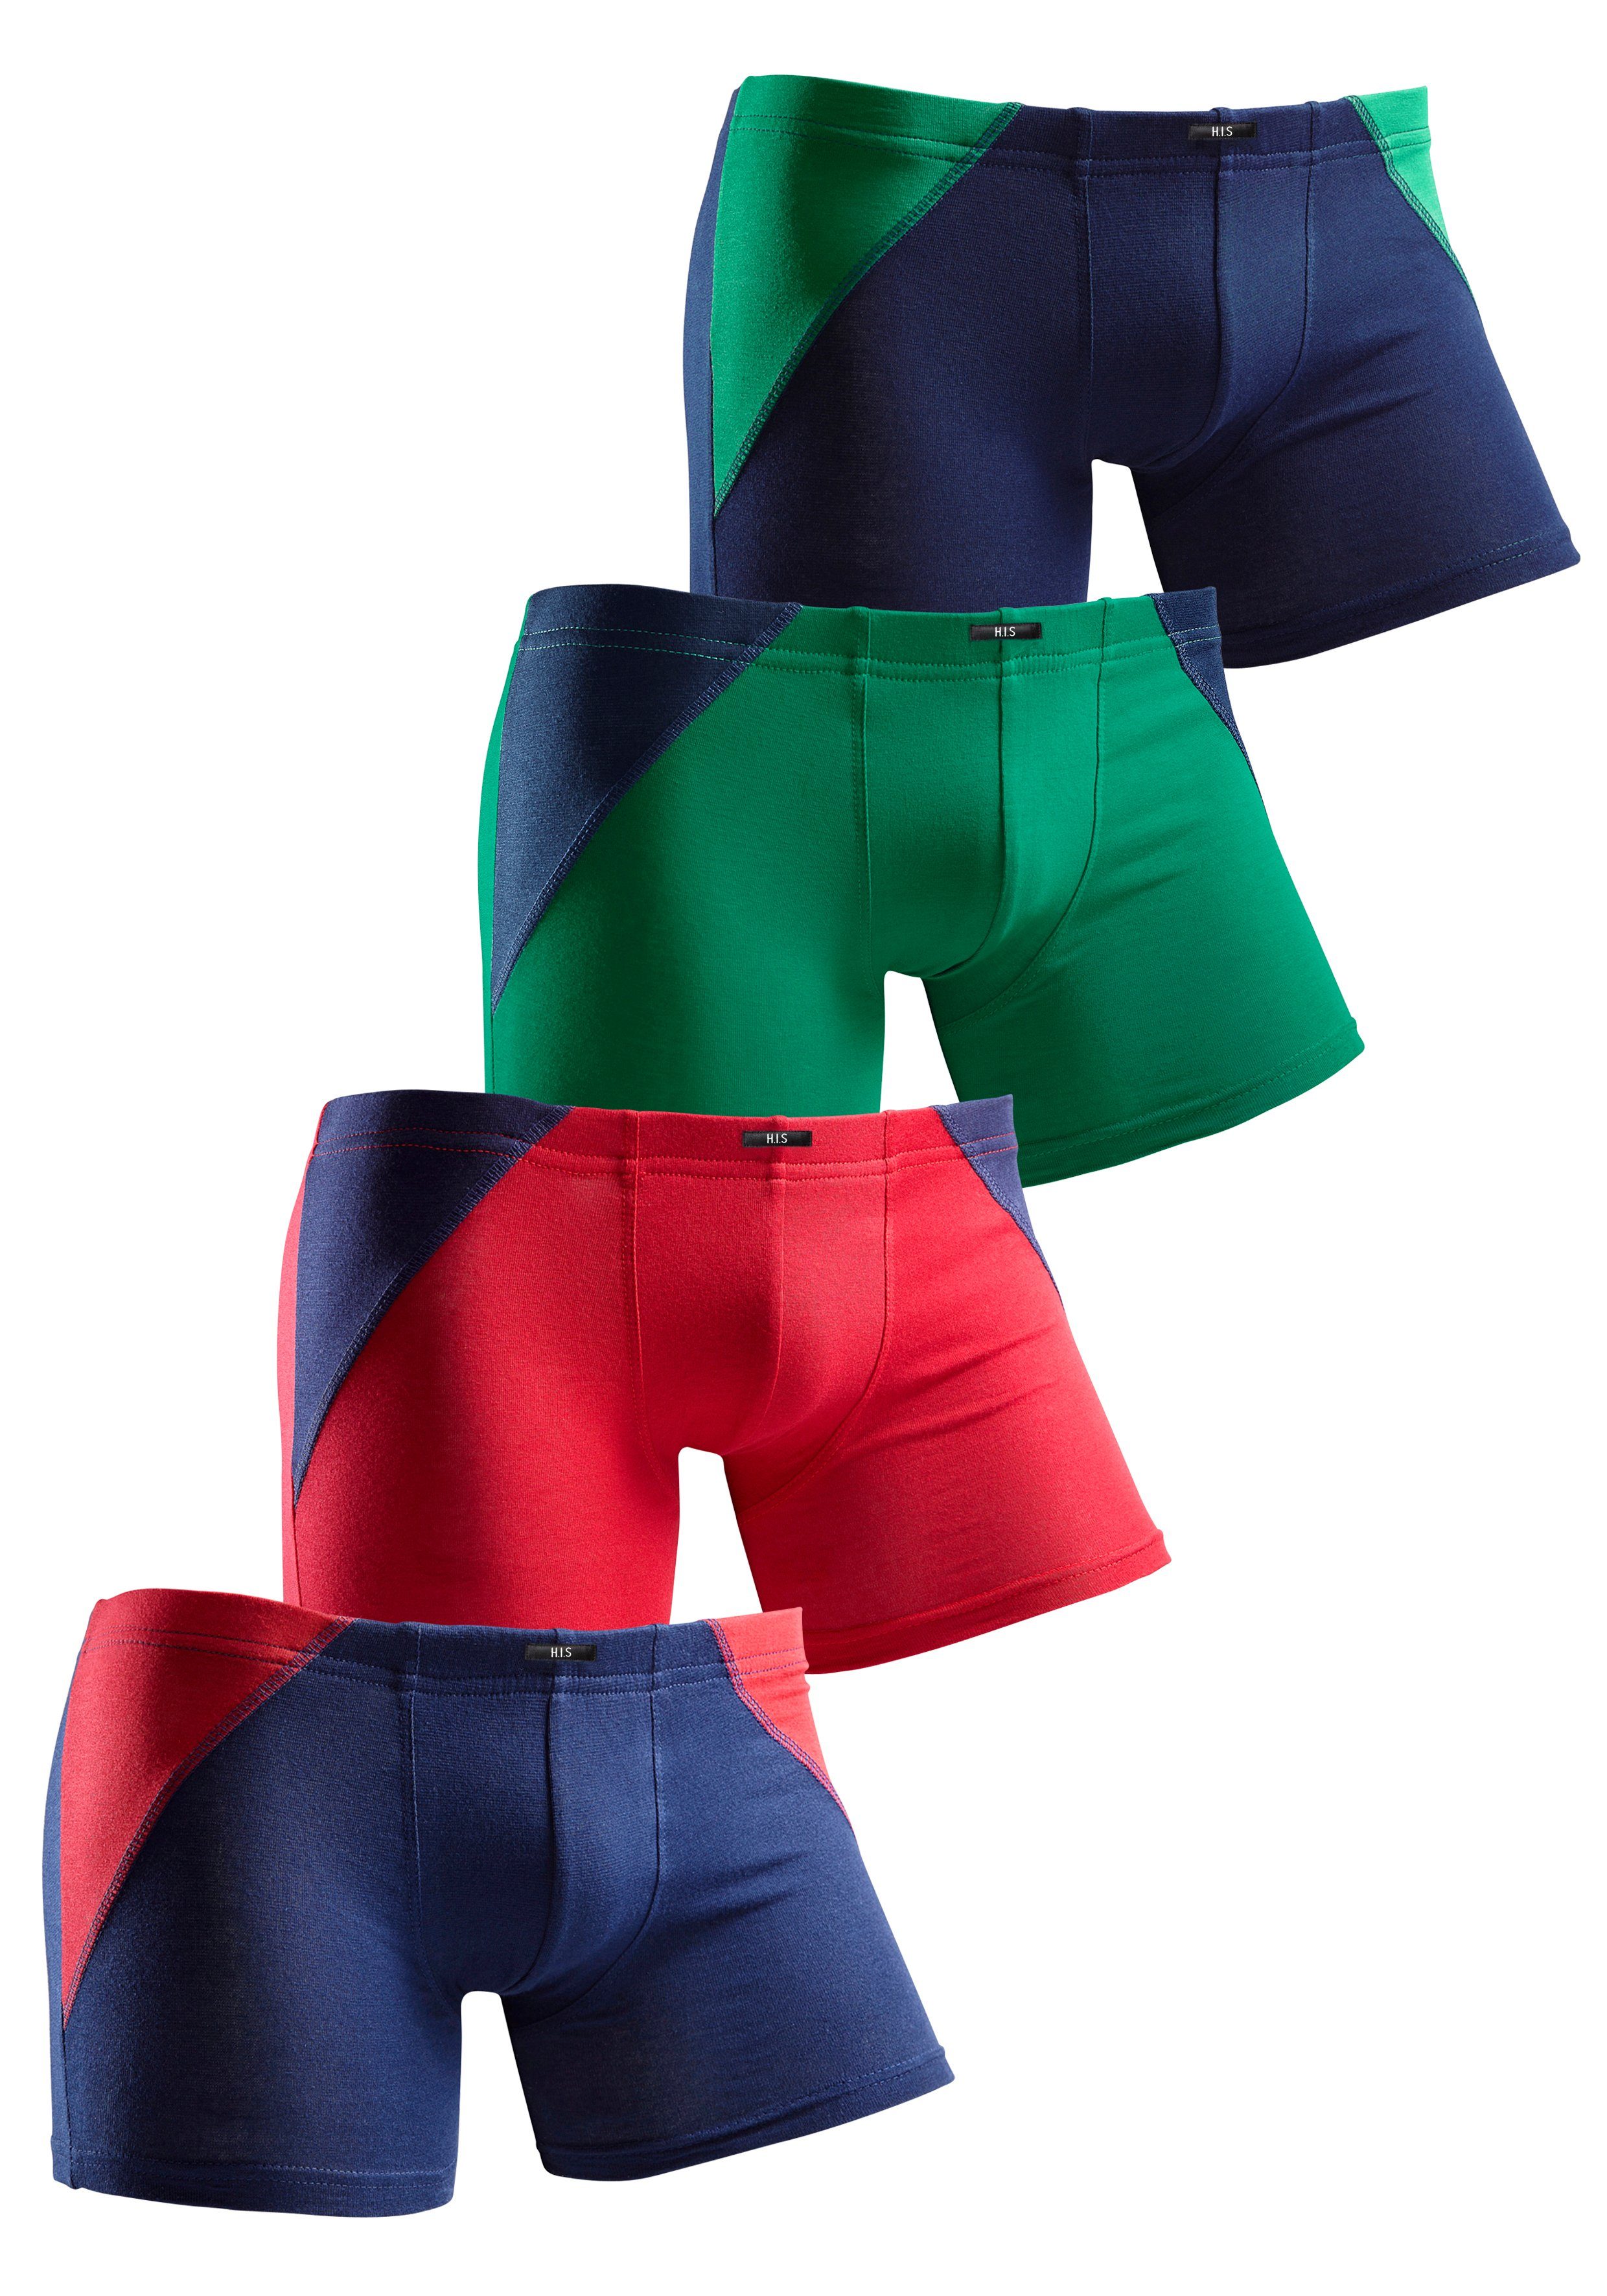 coolem Colorblocking für 4-St) (Packung, grün-marine, marine-grün, Boxer einen rot-marine, Auftritt sportlichen mit H.I.S marine-rot